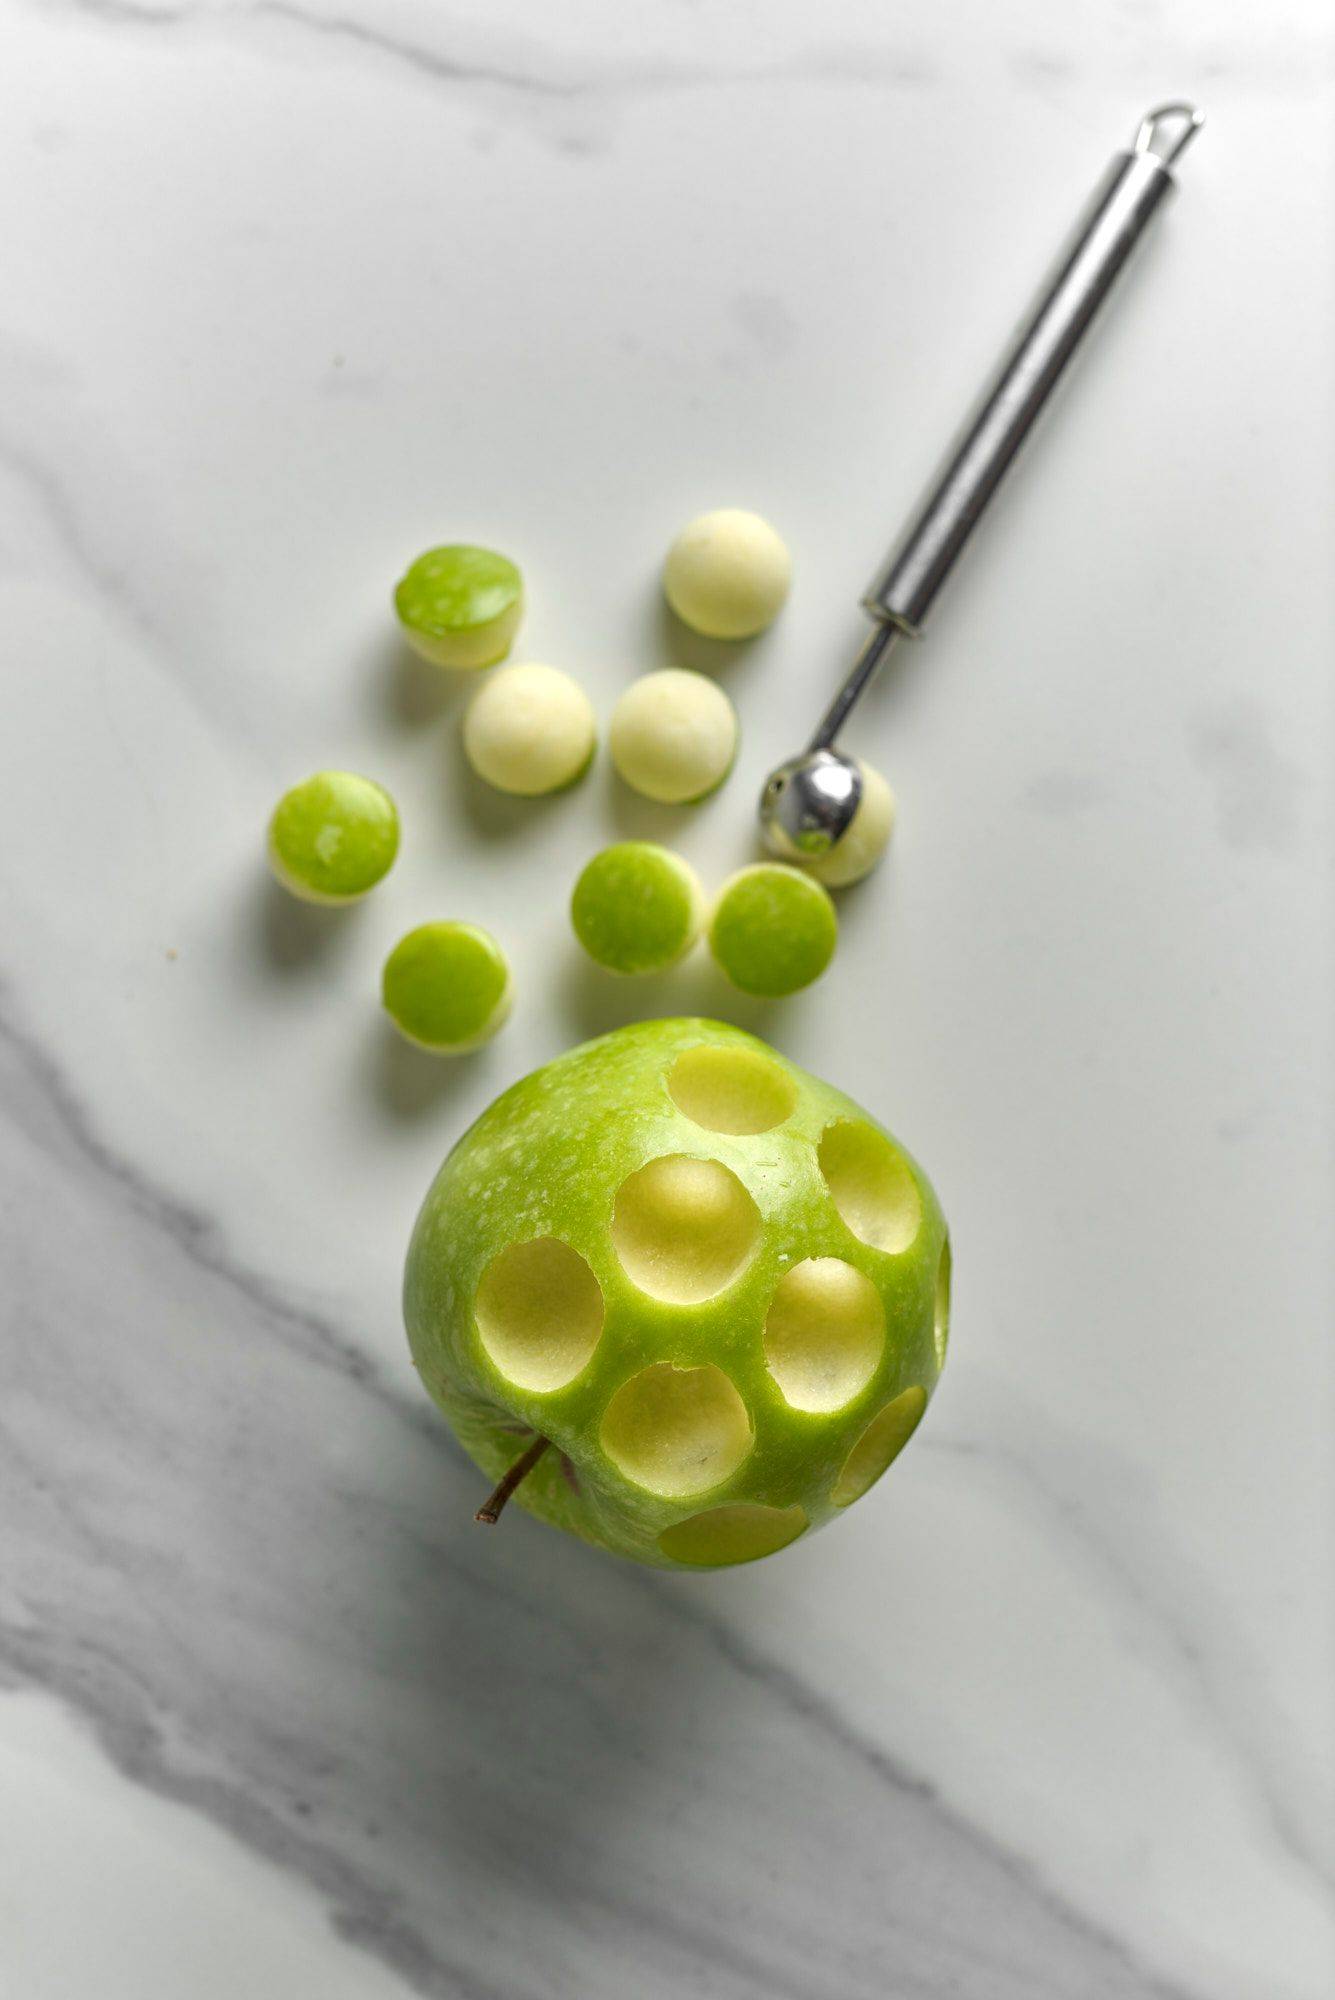 grüner apfel mit marmoriertem sapienstone top